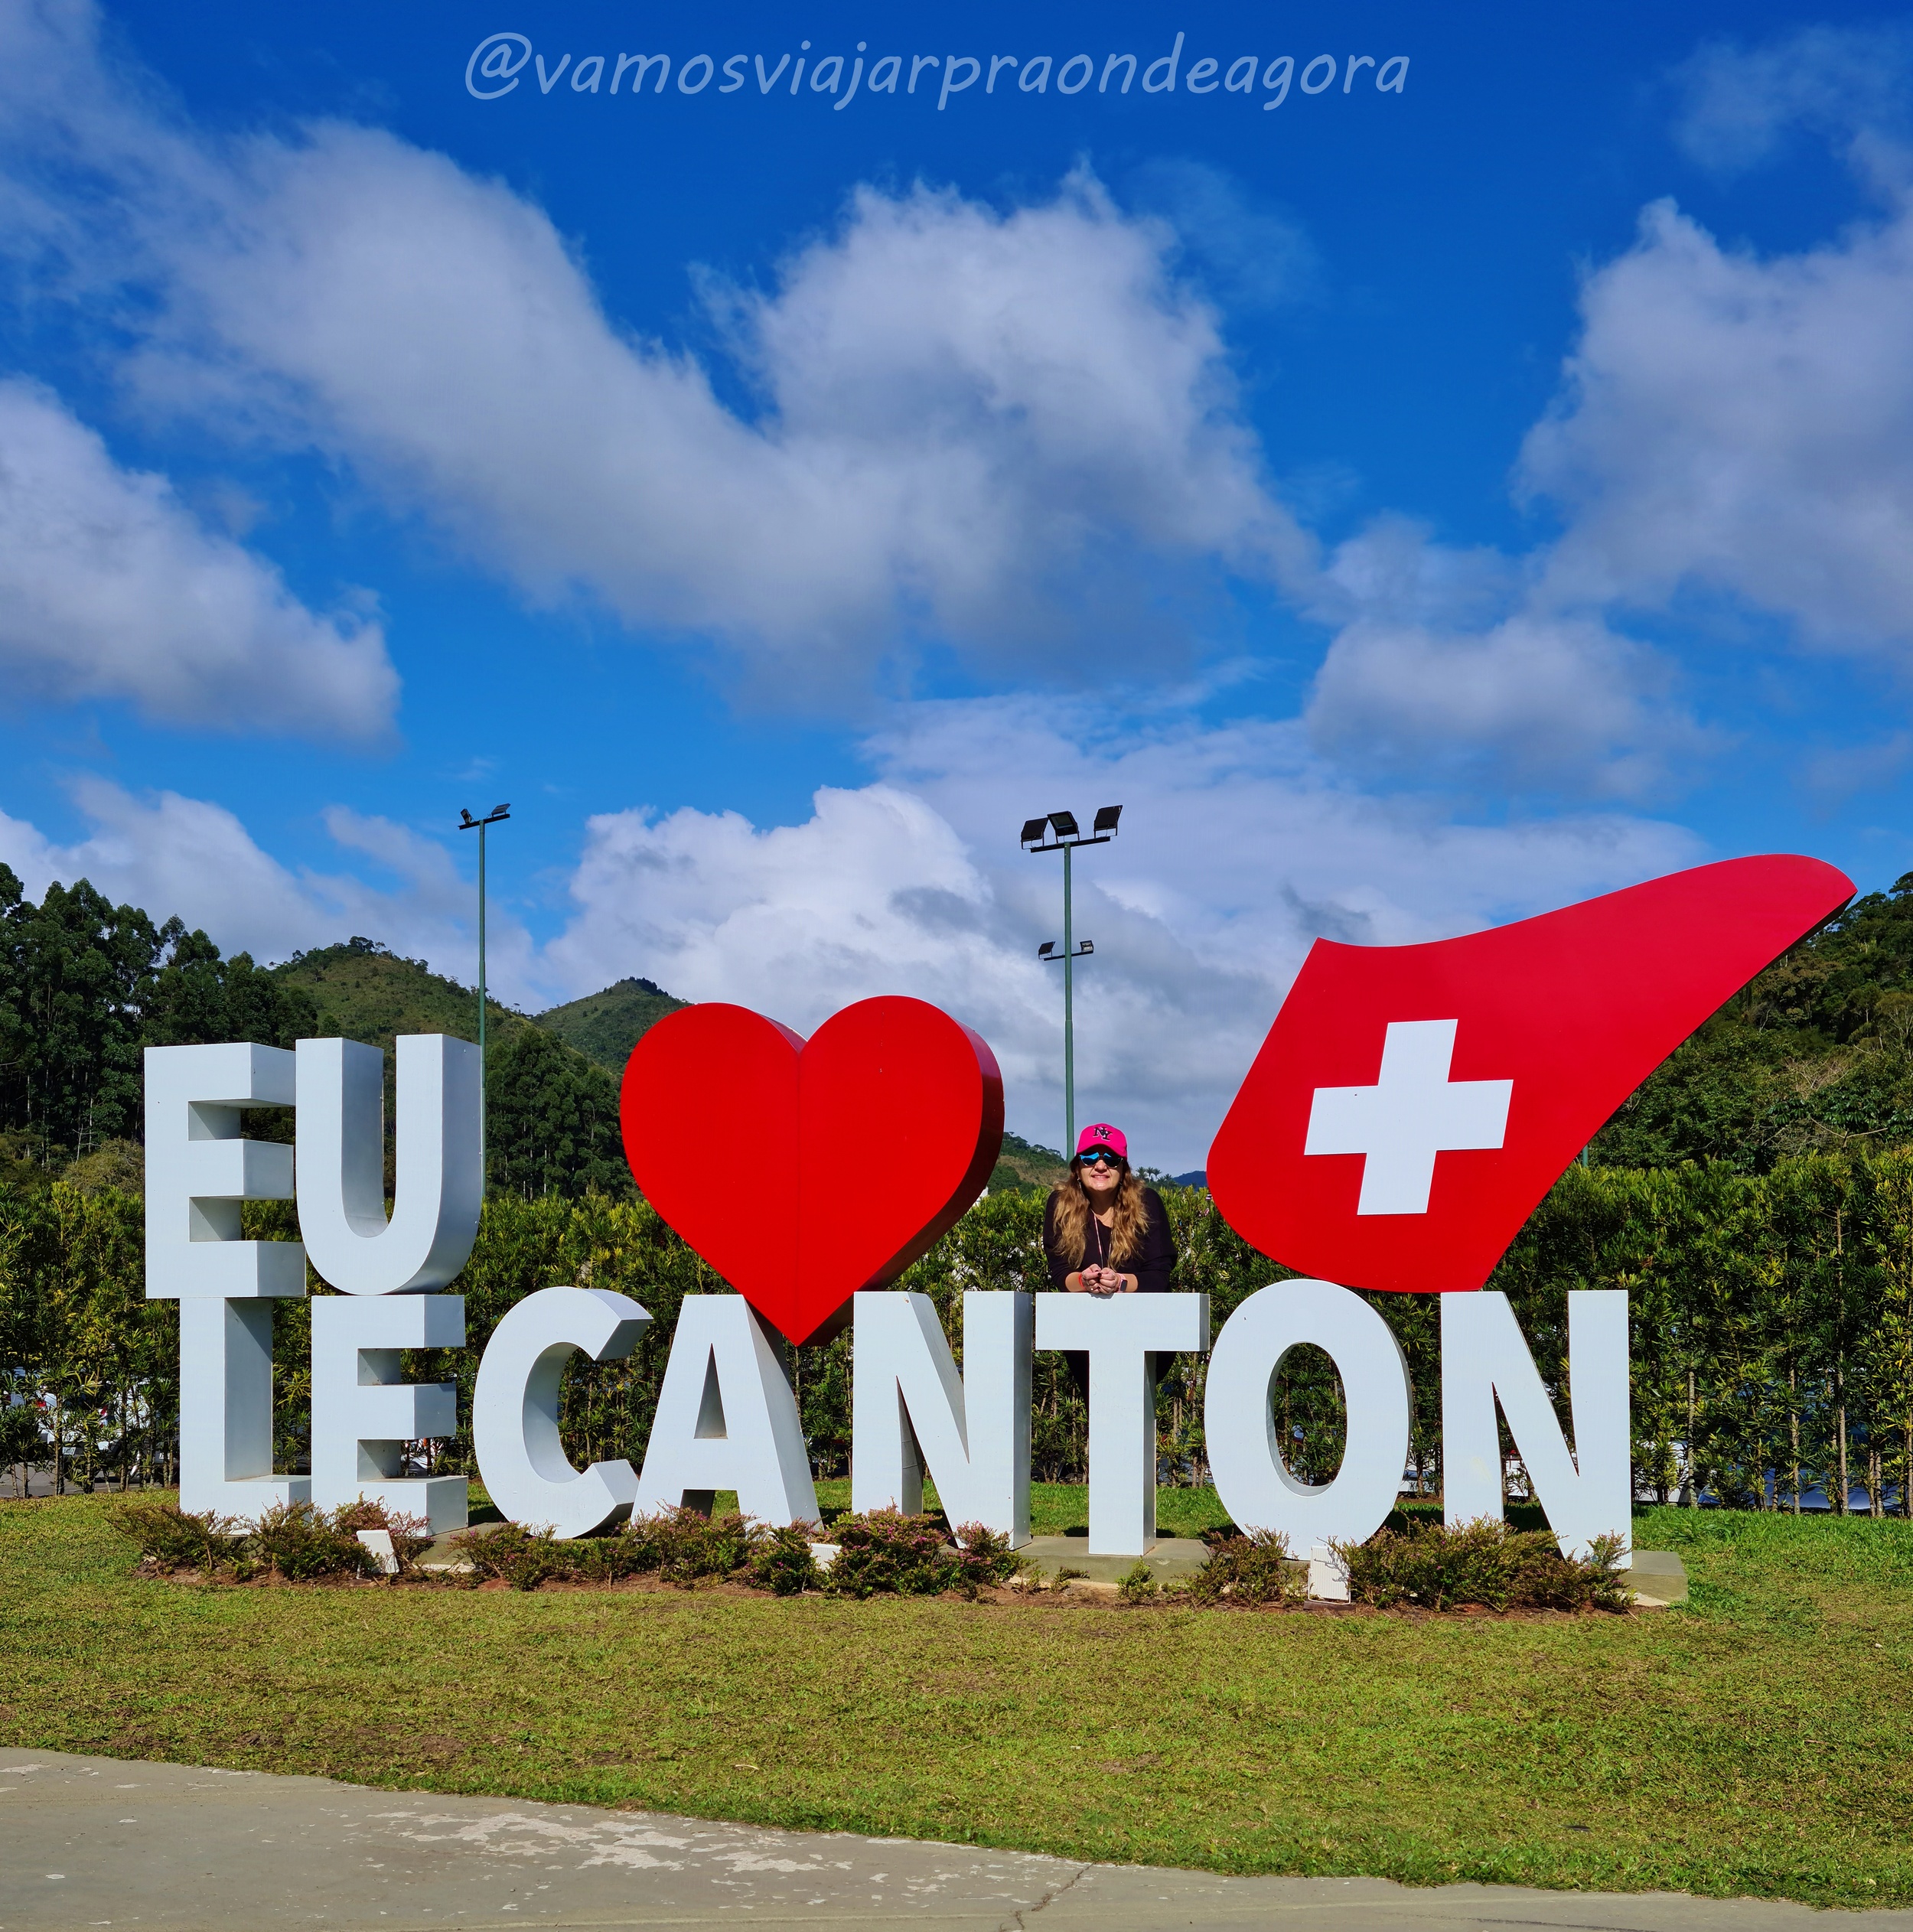 Le Canton, um pedacinho da Suíça no RJ